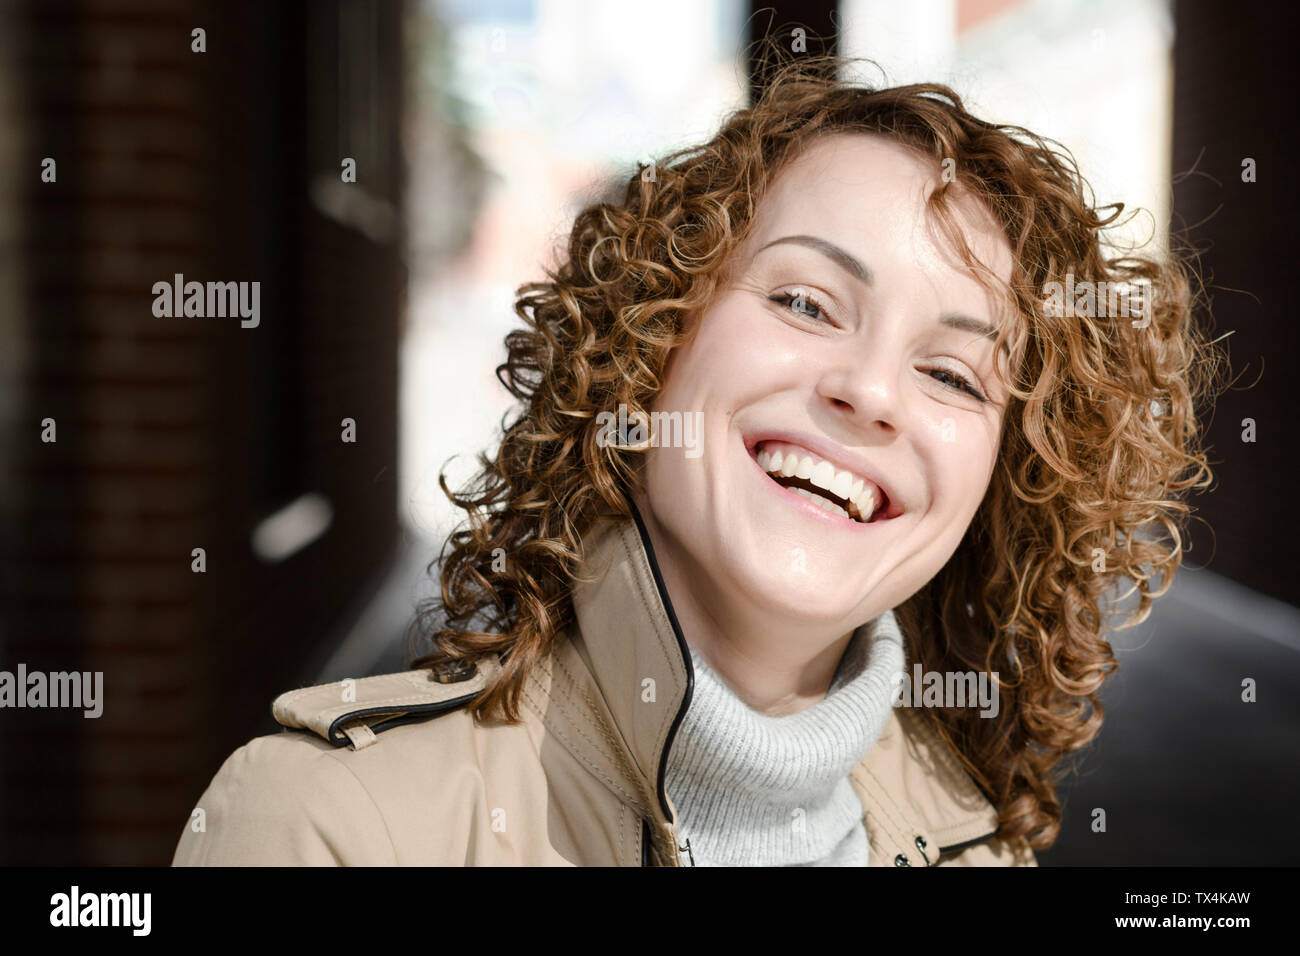 Retrato de mujer de risa con el pelo rizado Foto de stock